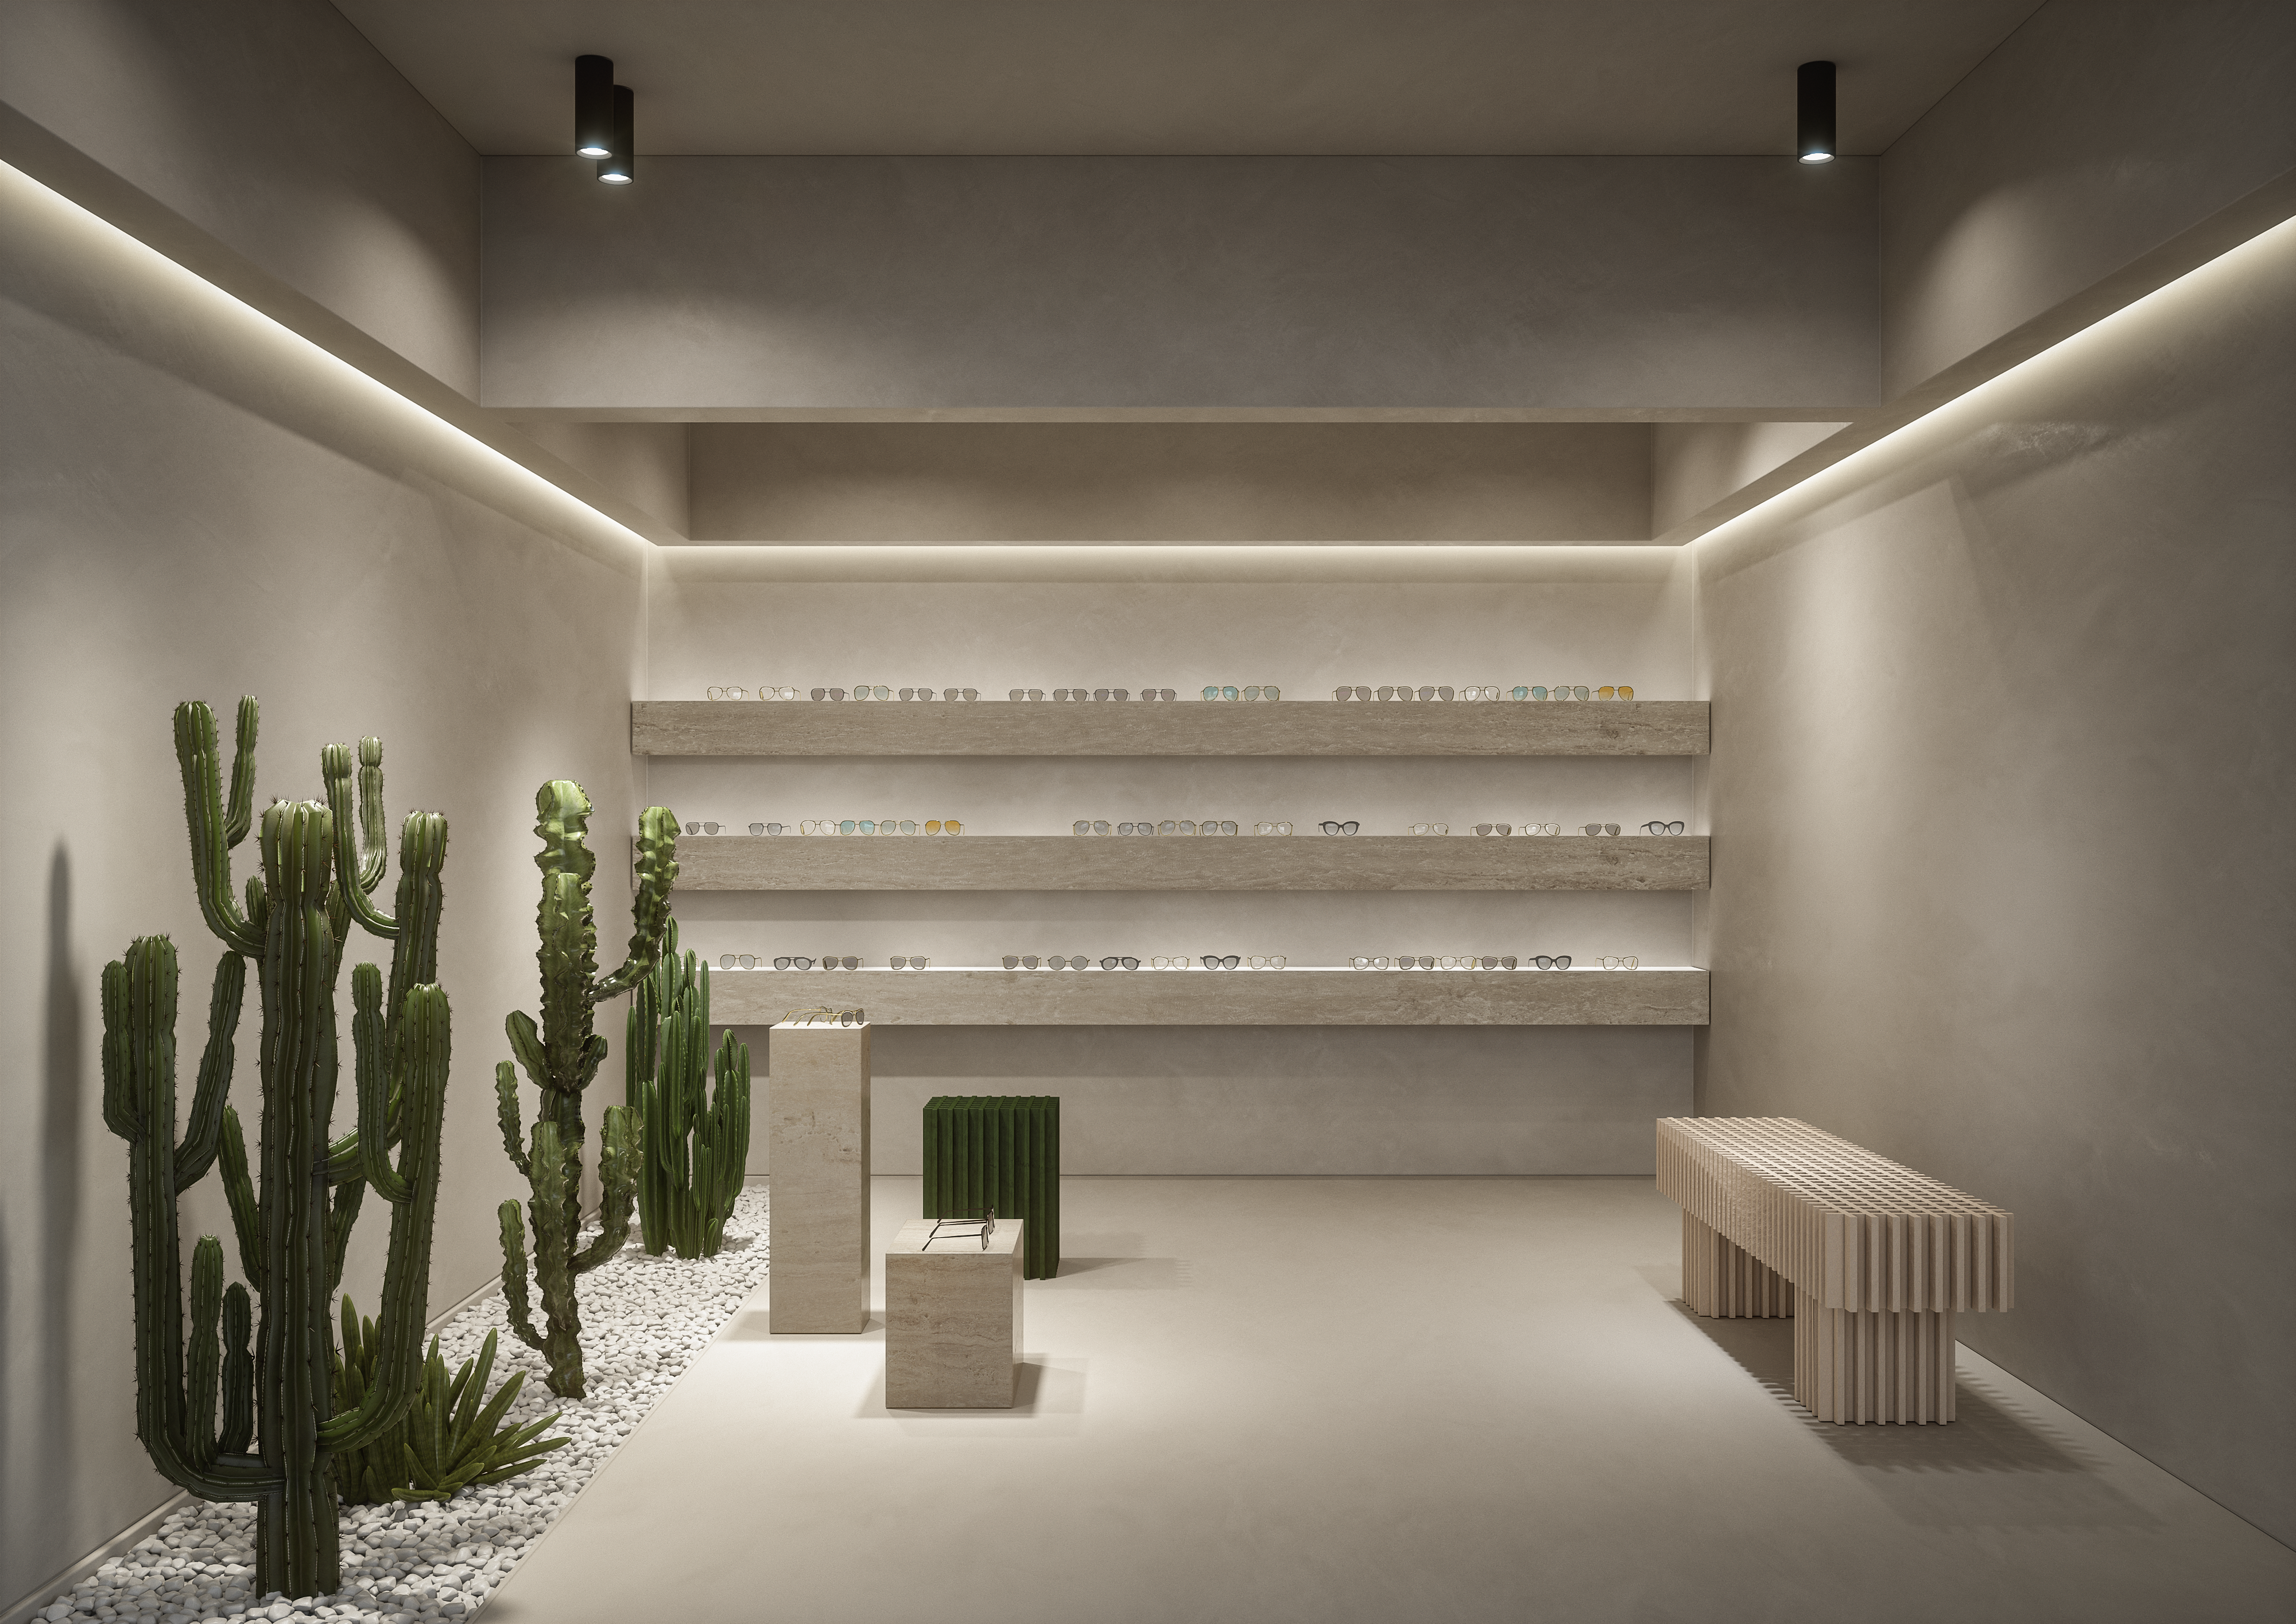 3D render van een interieur ontwerp voor een optiek. Dit concept bevat zeer minimalistische materialen als microtopping en planten in een neutrale kleur.